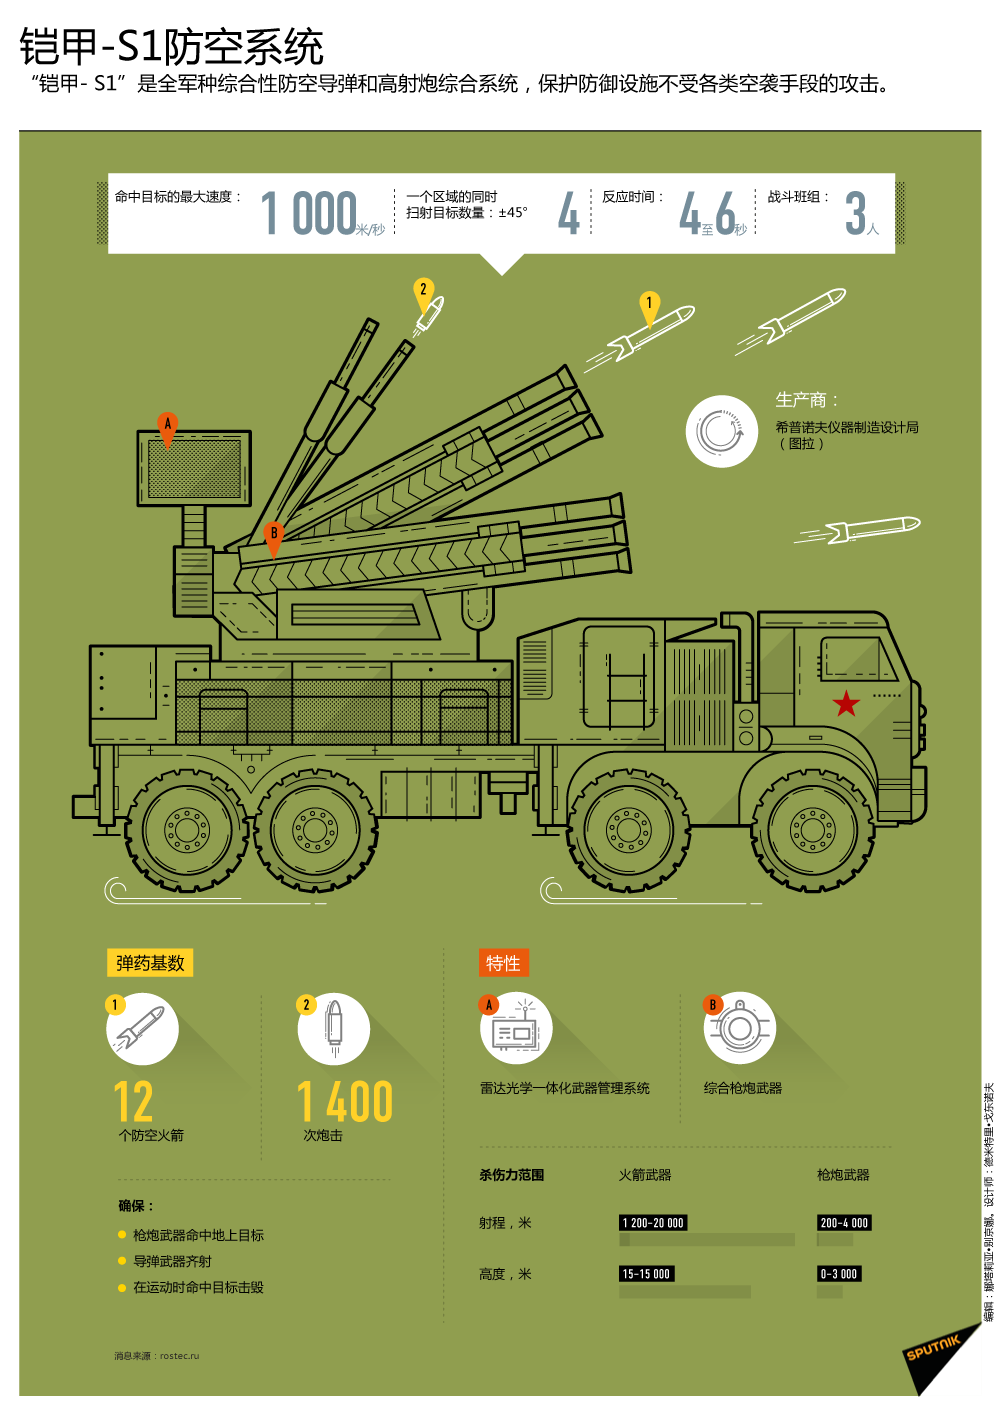 鎧甲-S1防空系統 - 俄羅斯衛星通訊社